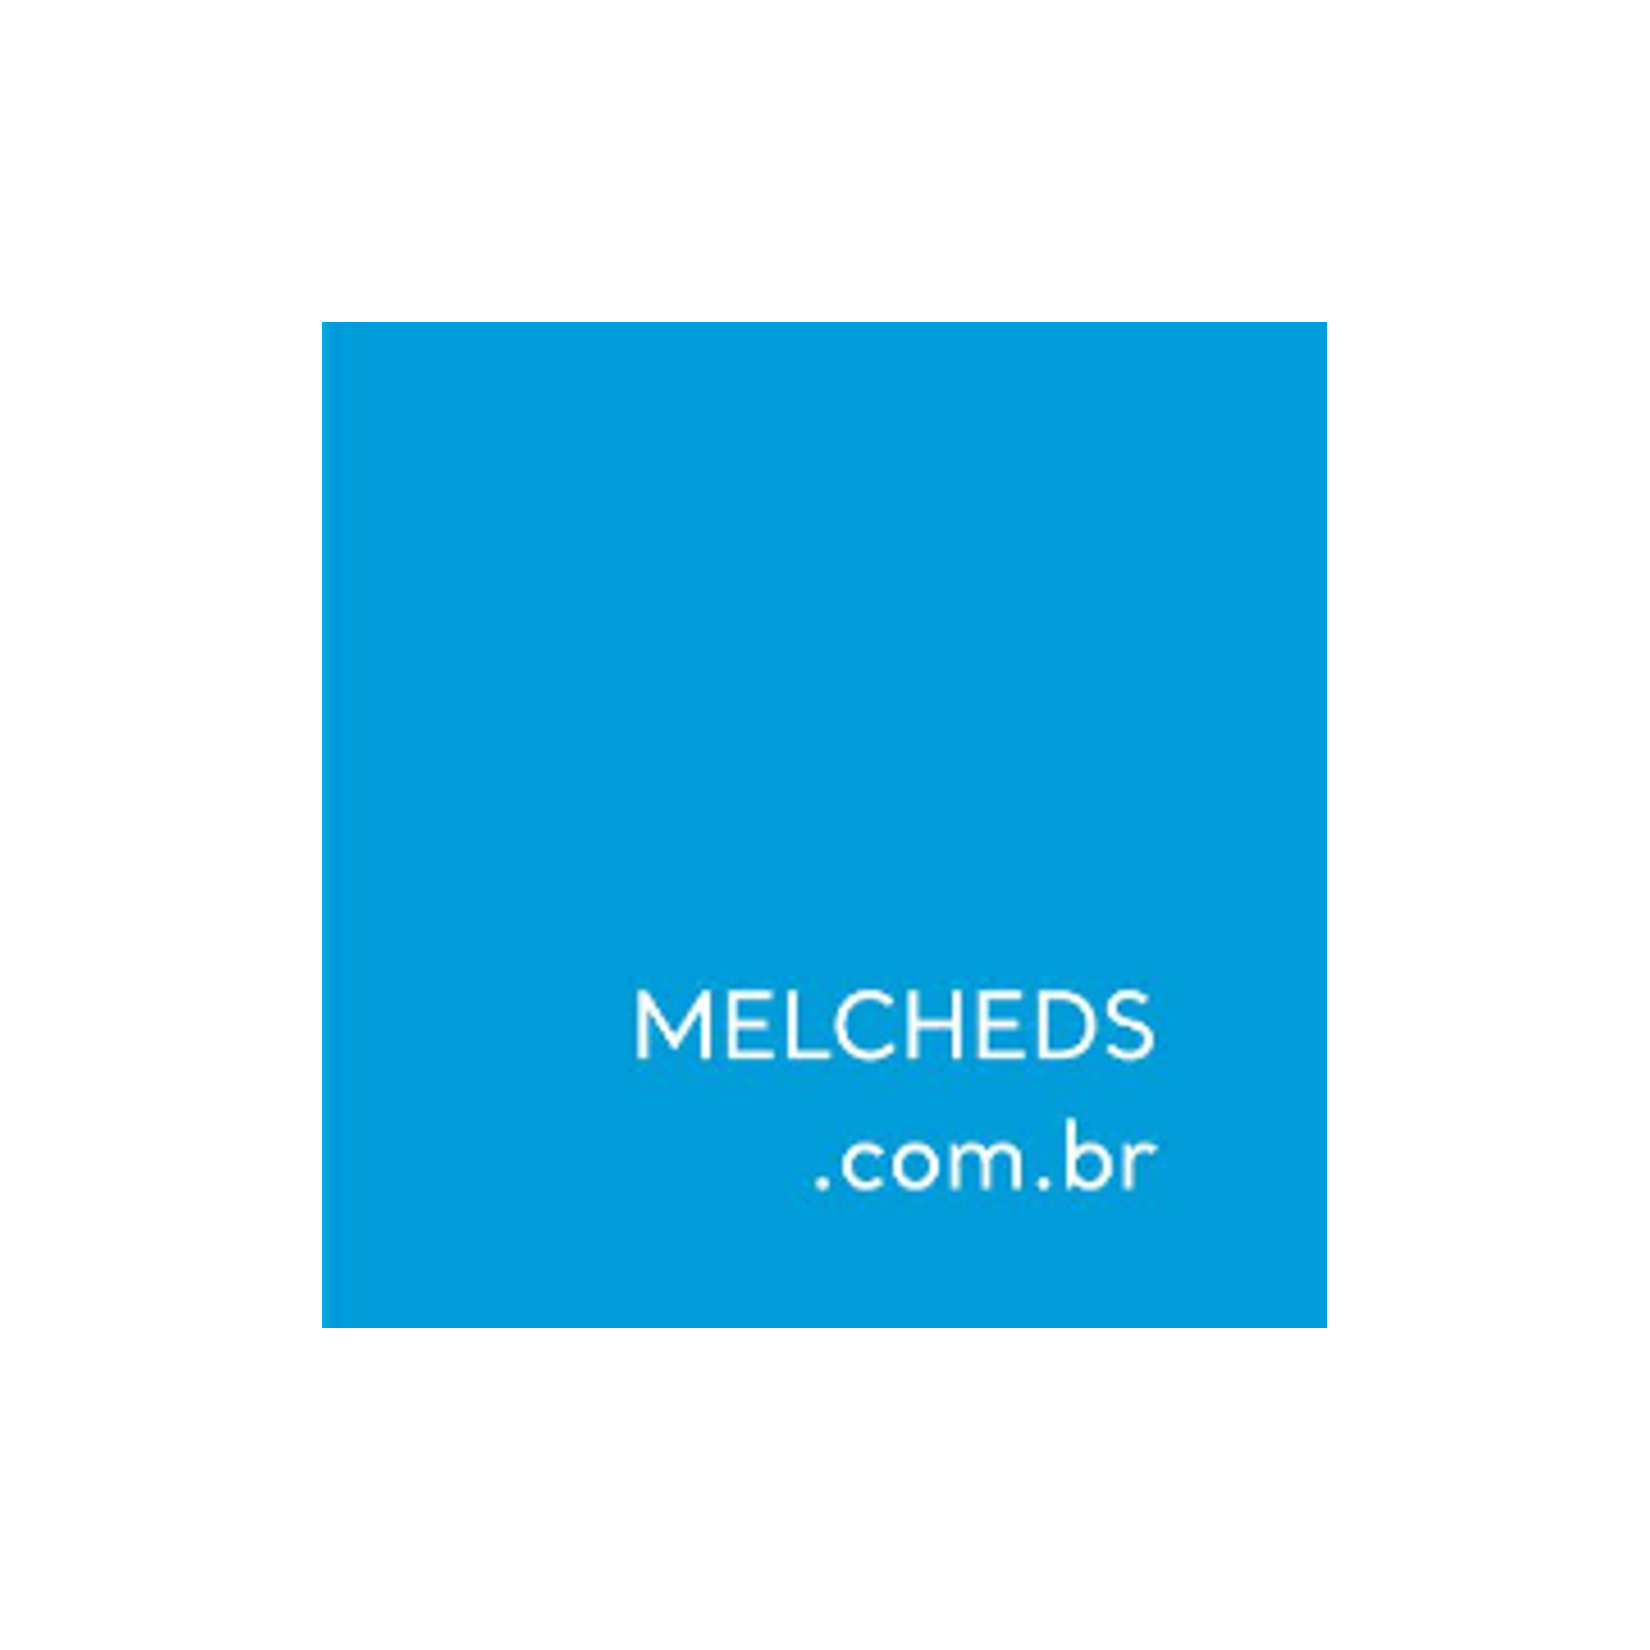 Melcheds - Mello e Rached Advogados